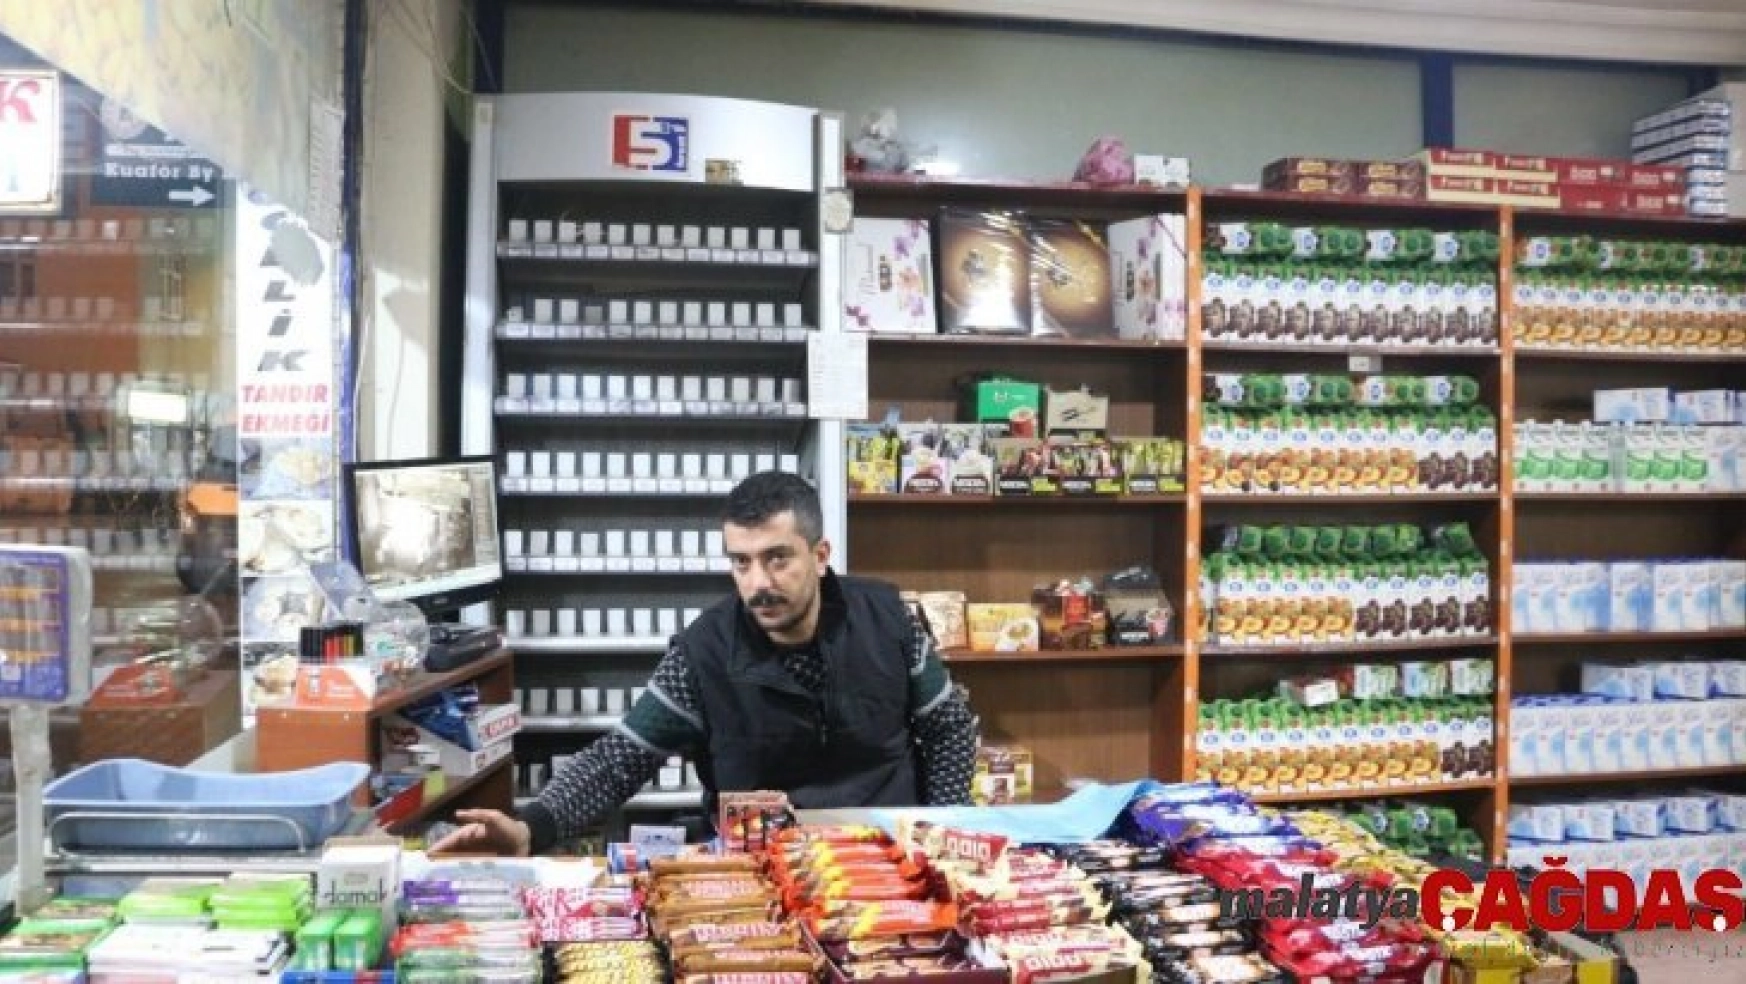 Siirt'te hırsızların marketten sigara çaldığı anlar kamerada